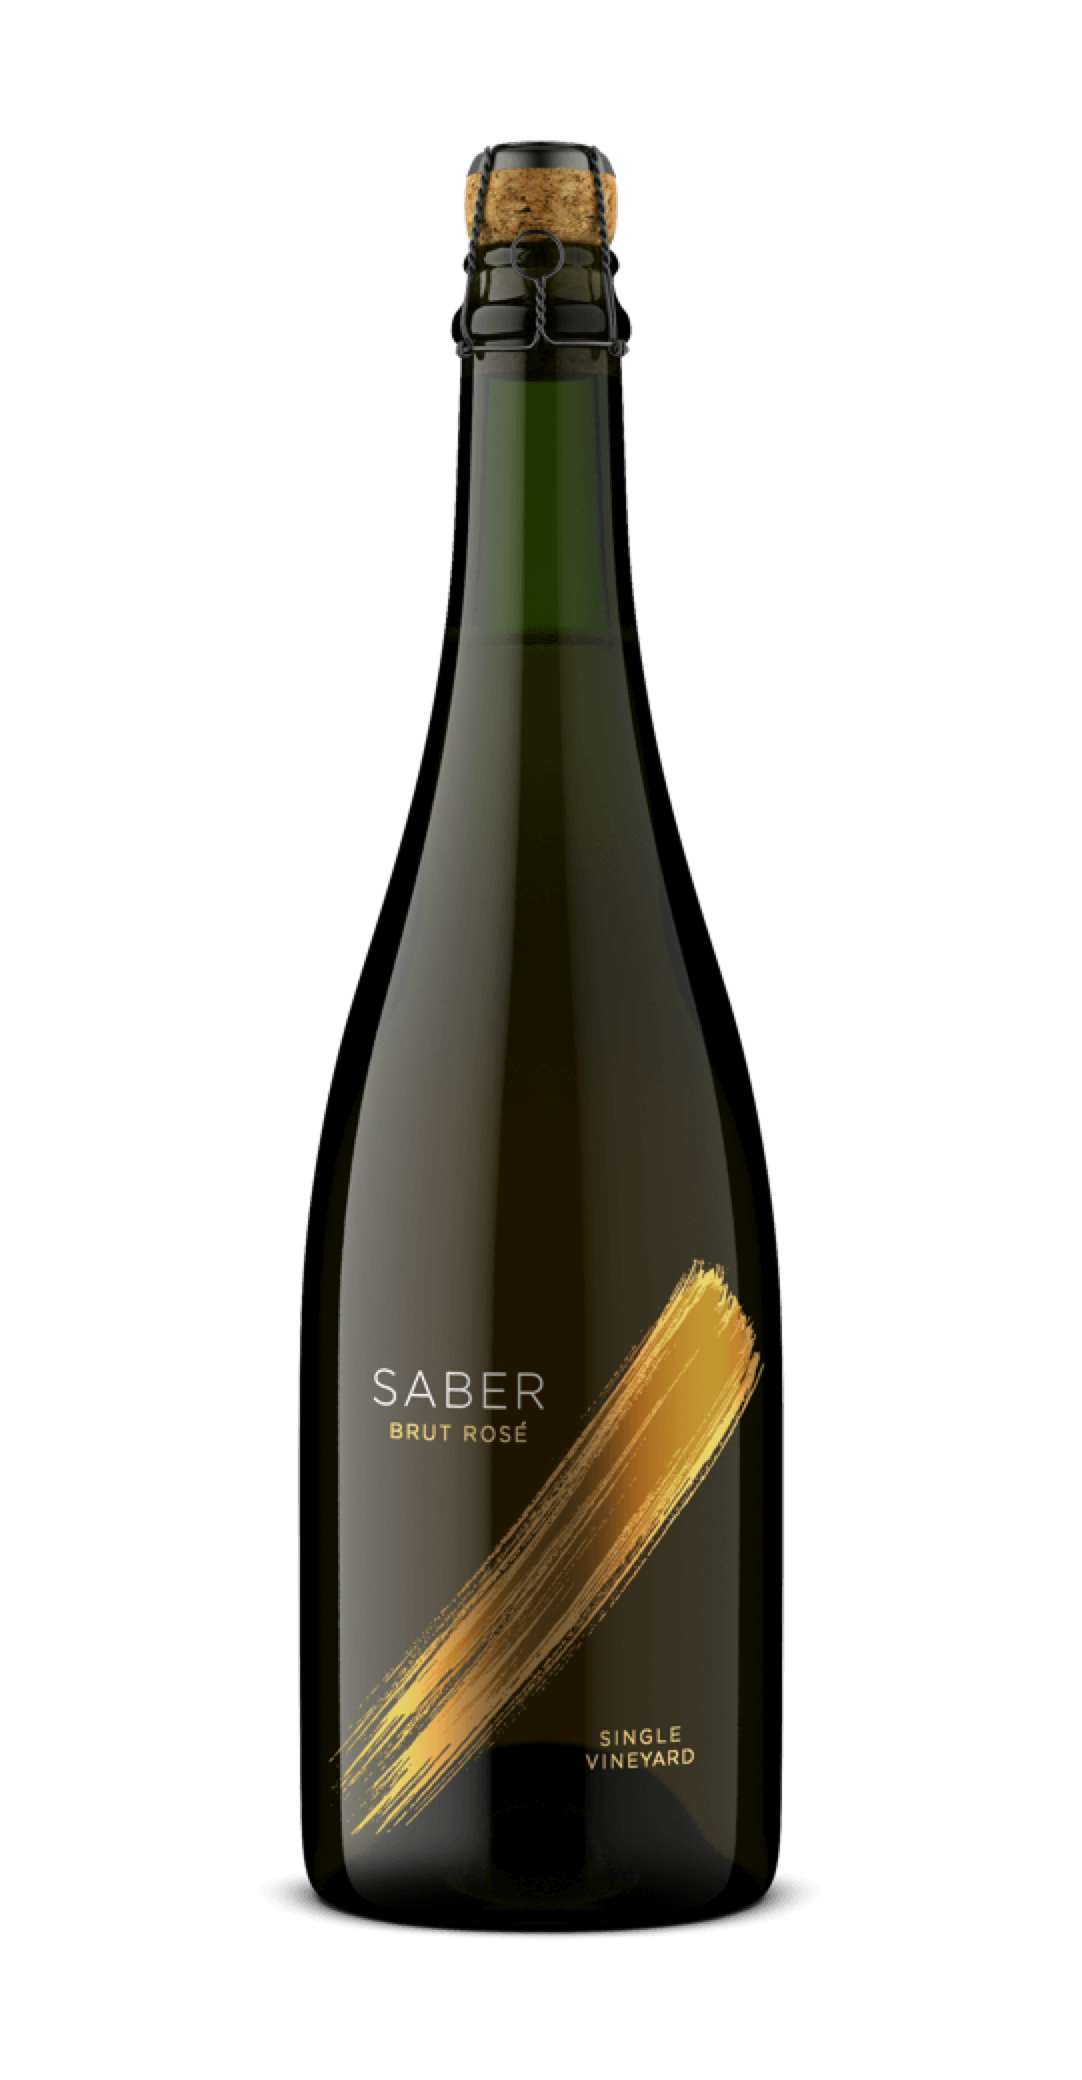 Saber Wine bottle